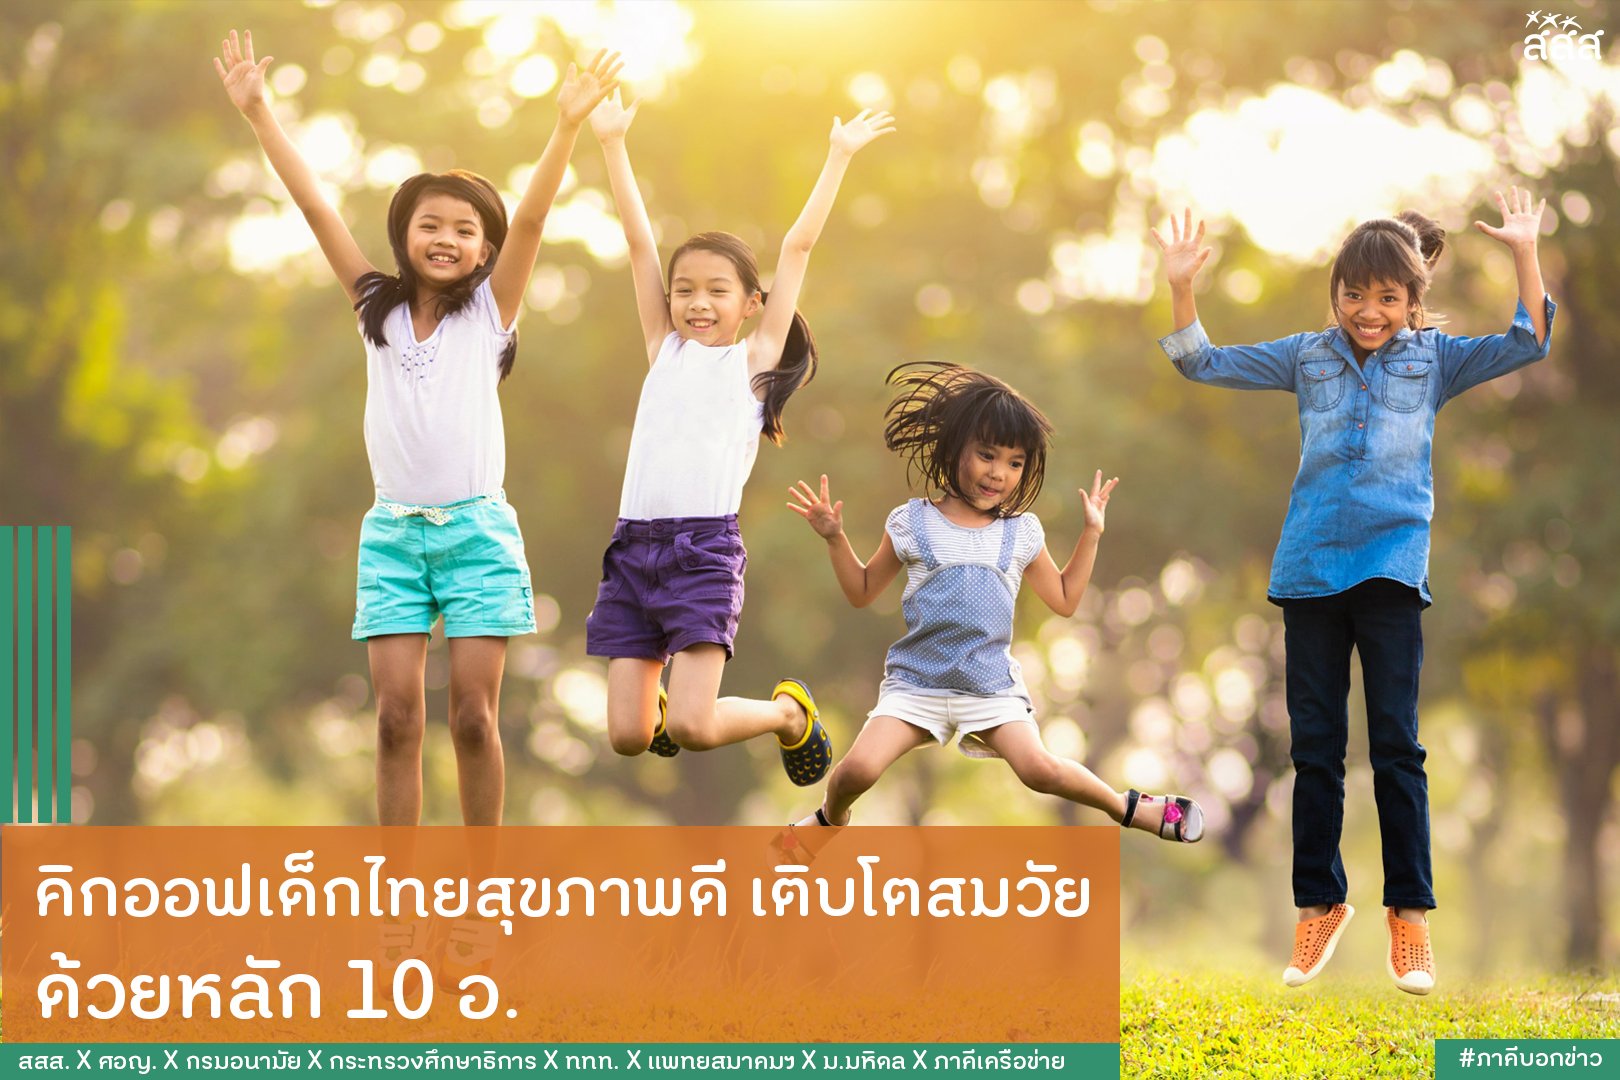 คิกออฟเด็กไทยสุขภาพดี เติบโตสมวัย ด้วยหลัก 10 อ. thaihealth